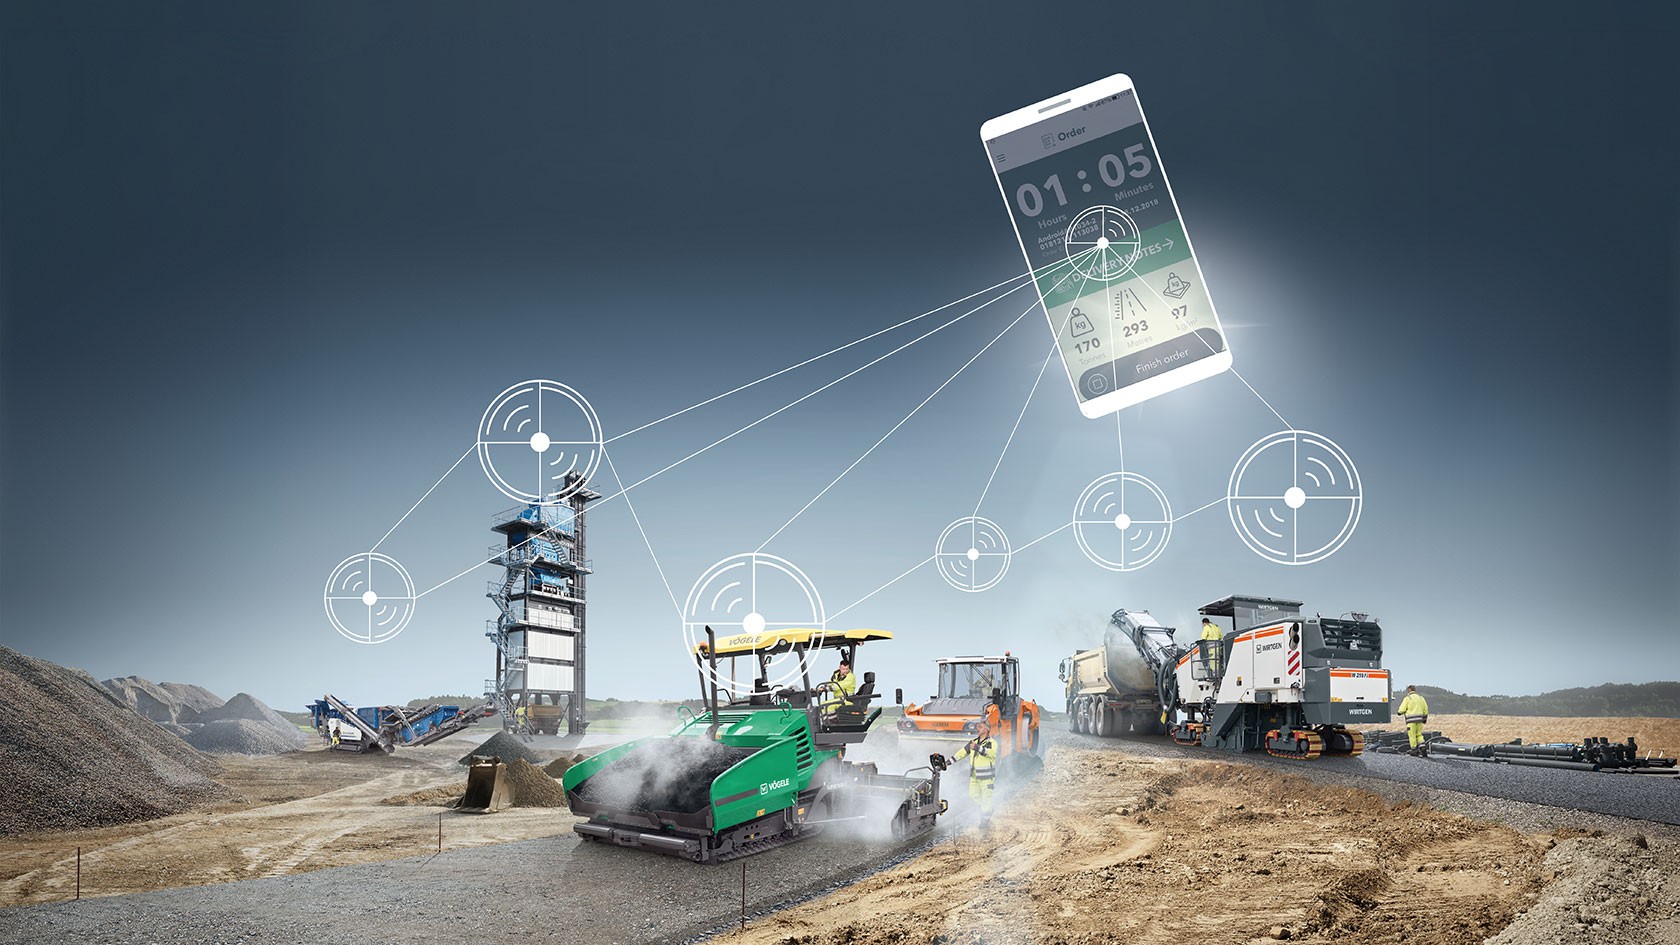 Rappresentazione delle macchine interconnesse del Wirtgen Group con l’app per smartphone